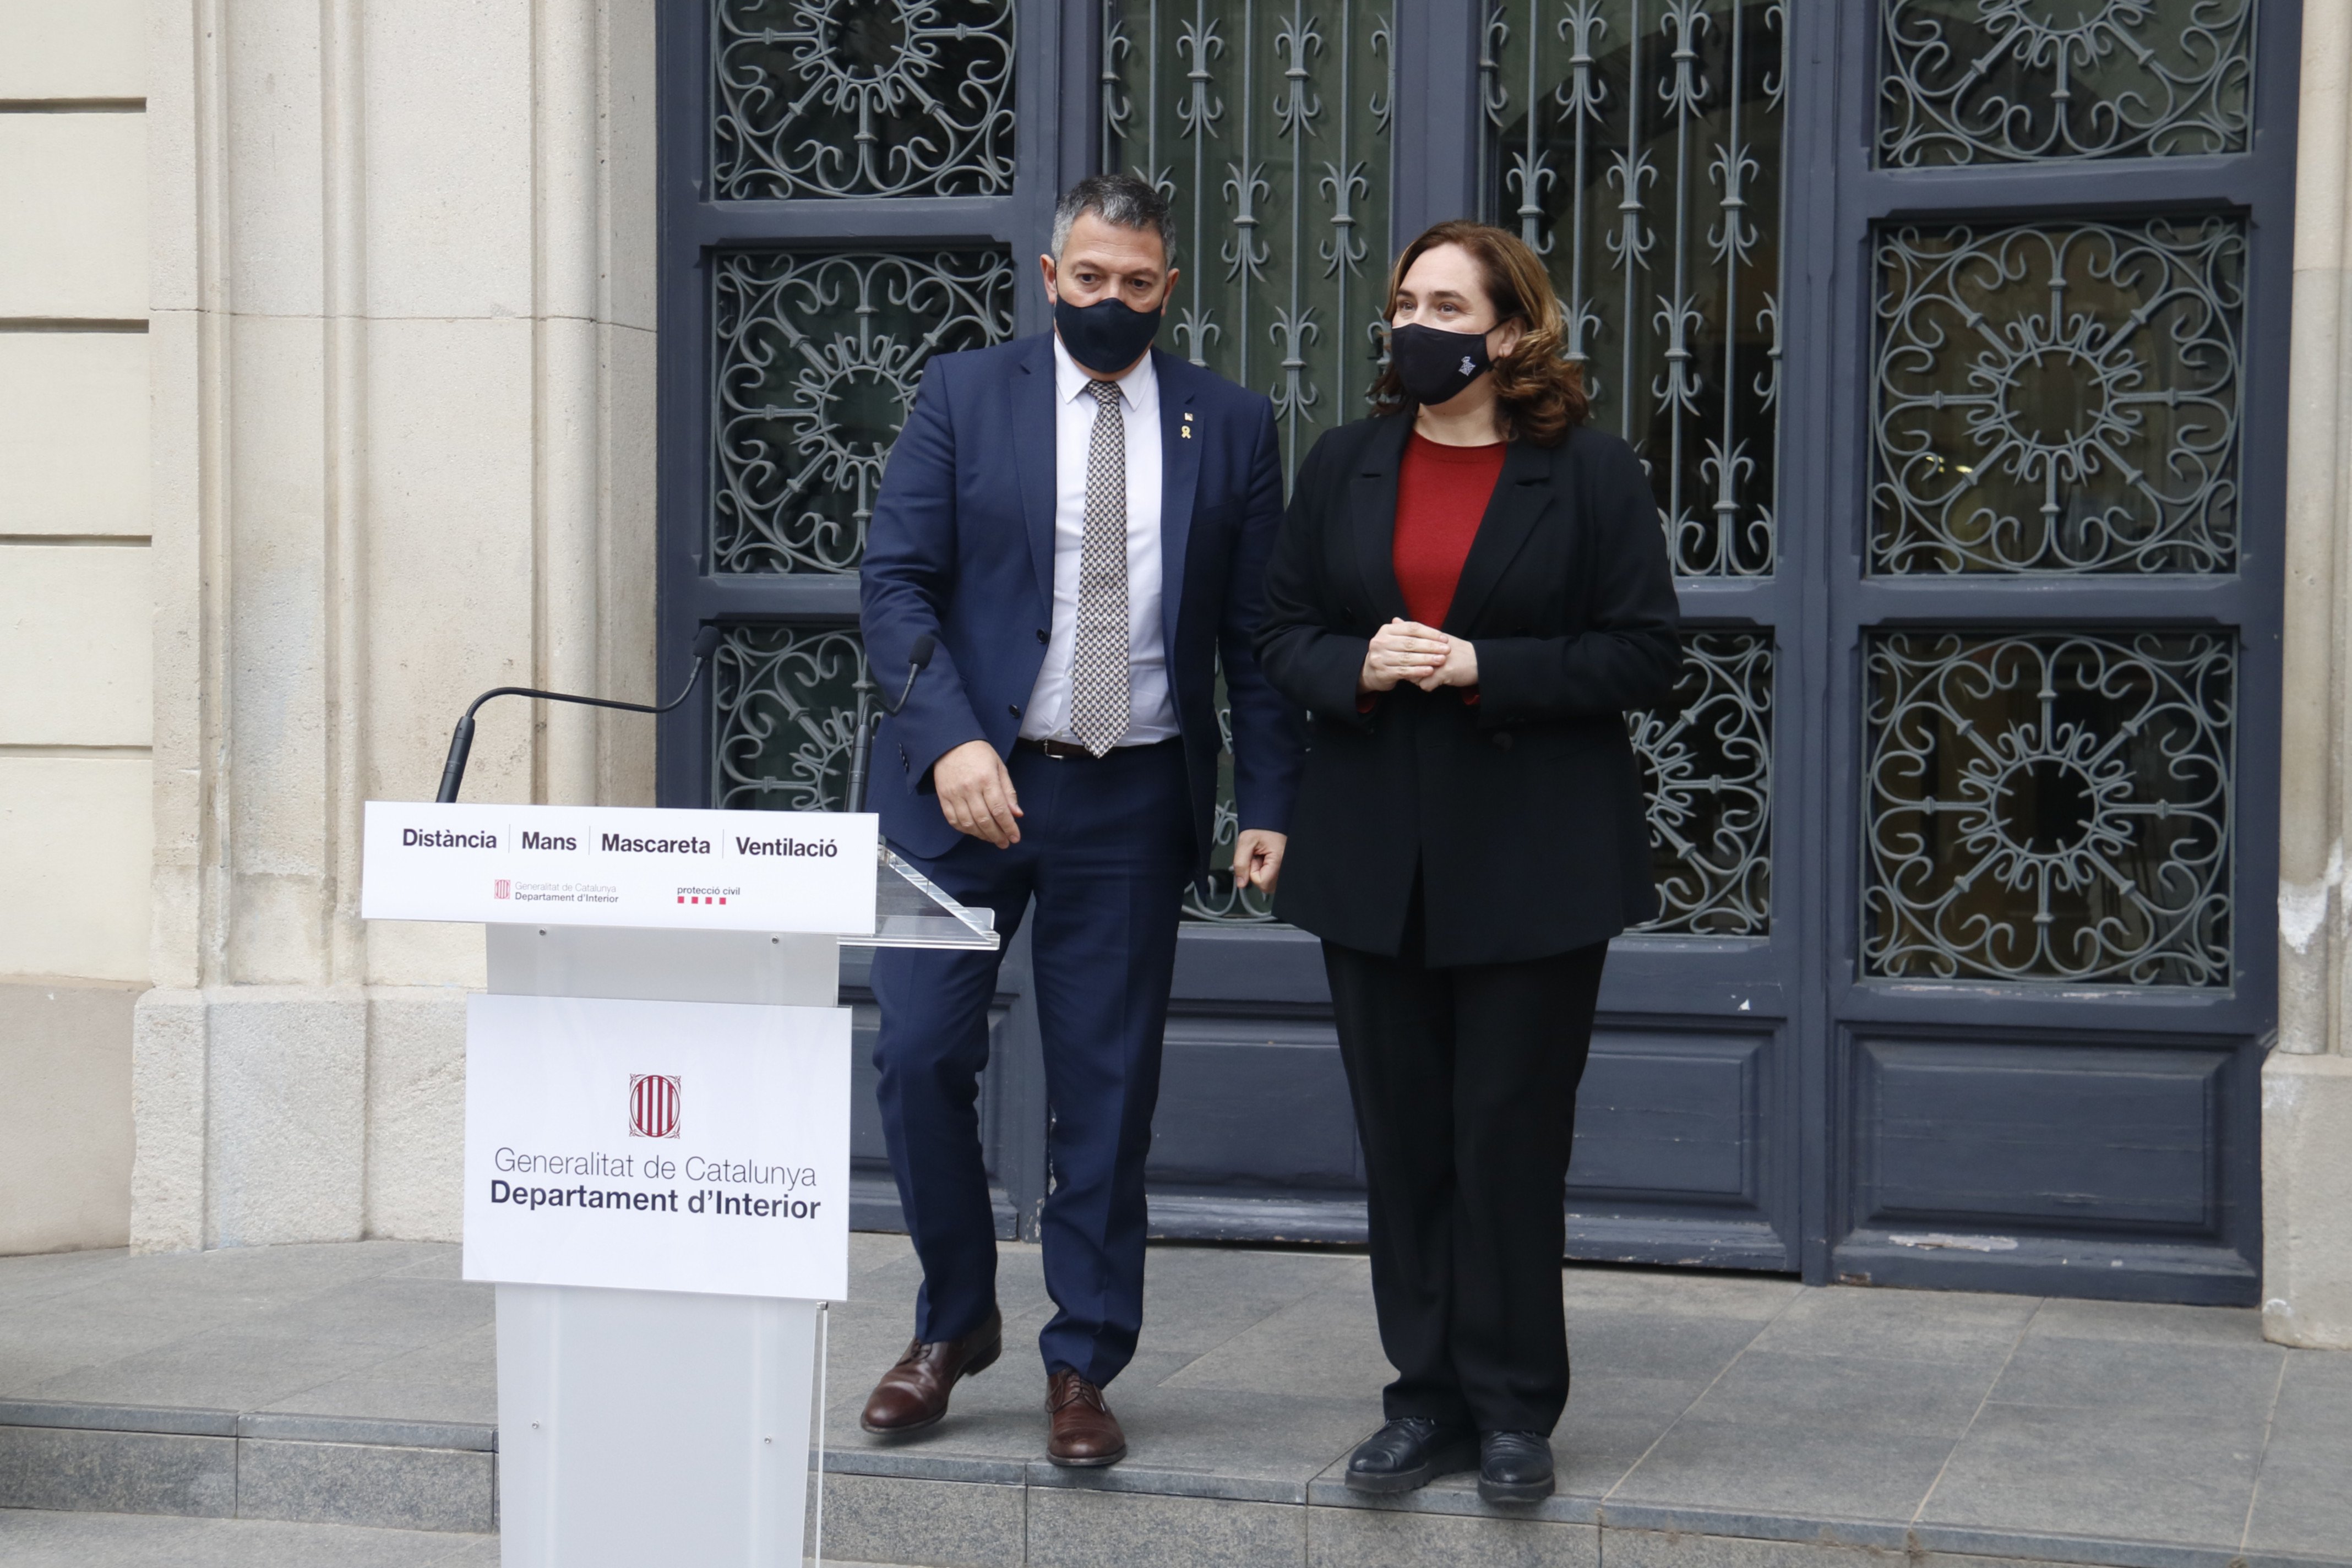 Sàmper y Colau exhiben "unidad contra la violencia" y ninguna solución